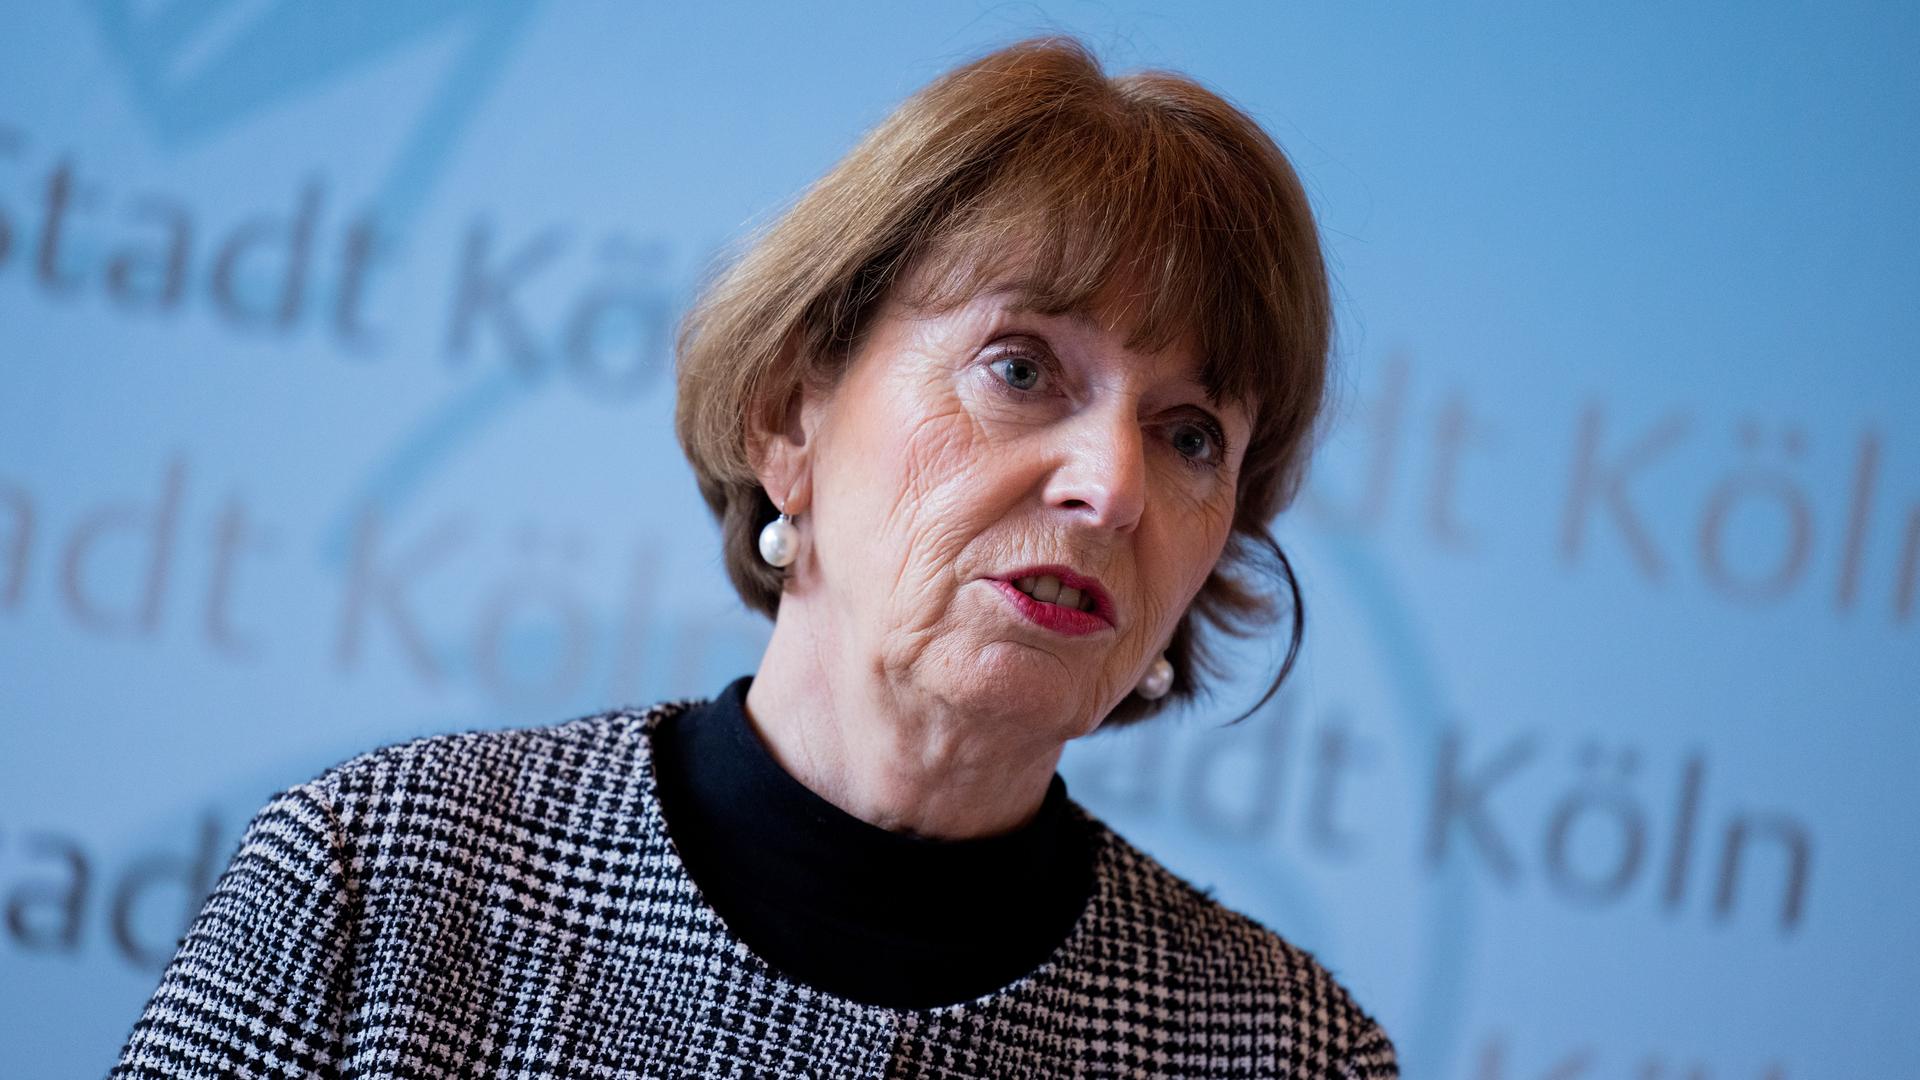 Die Kölner Oberbürgermeisterin Henriette Reker spricht mit ernster Miene vor einem hellblauen Hintergrund mit der Aufschrift "Stadt Köln".